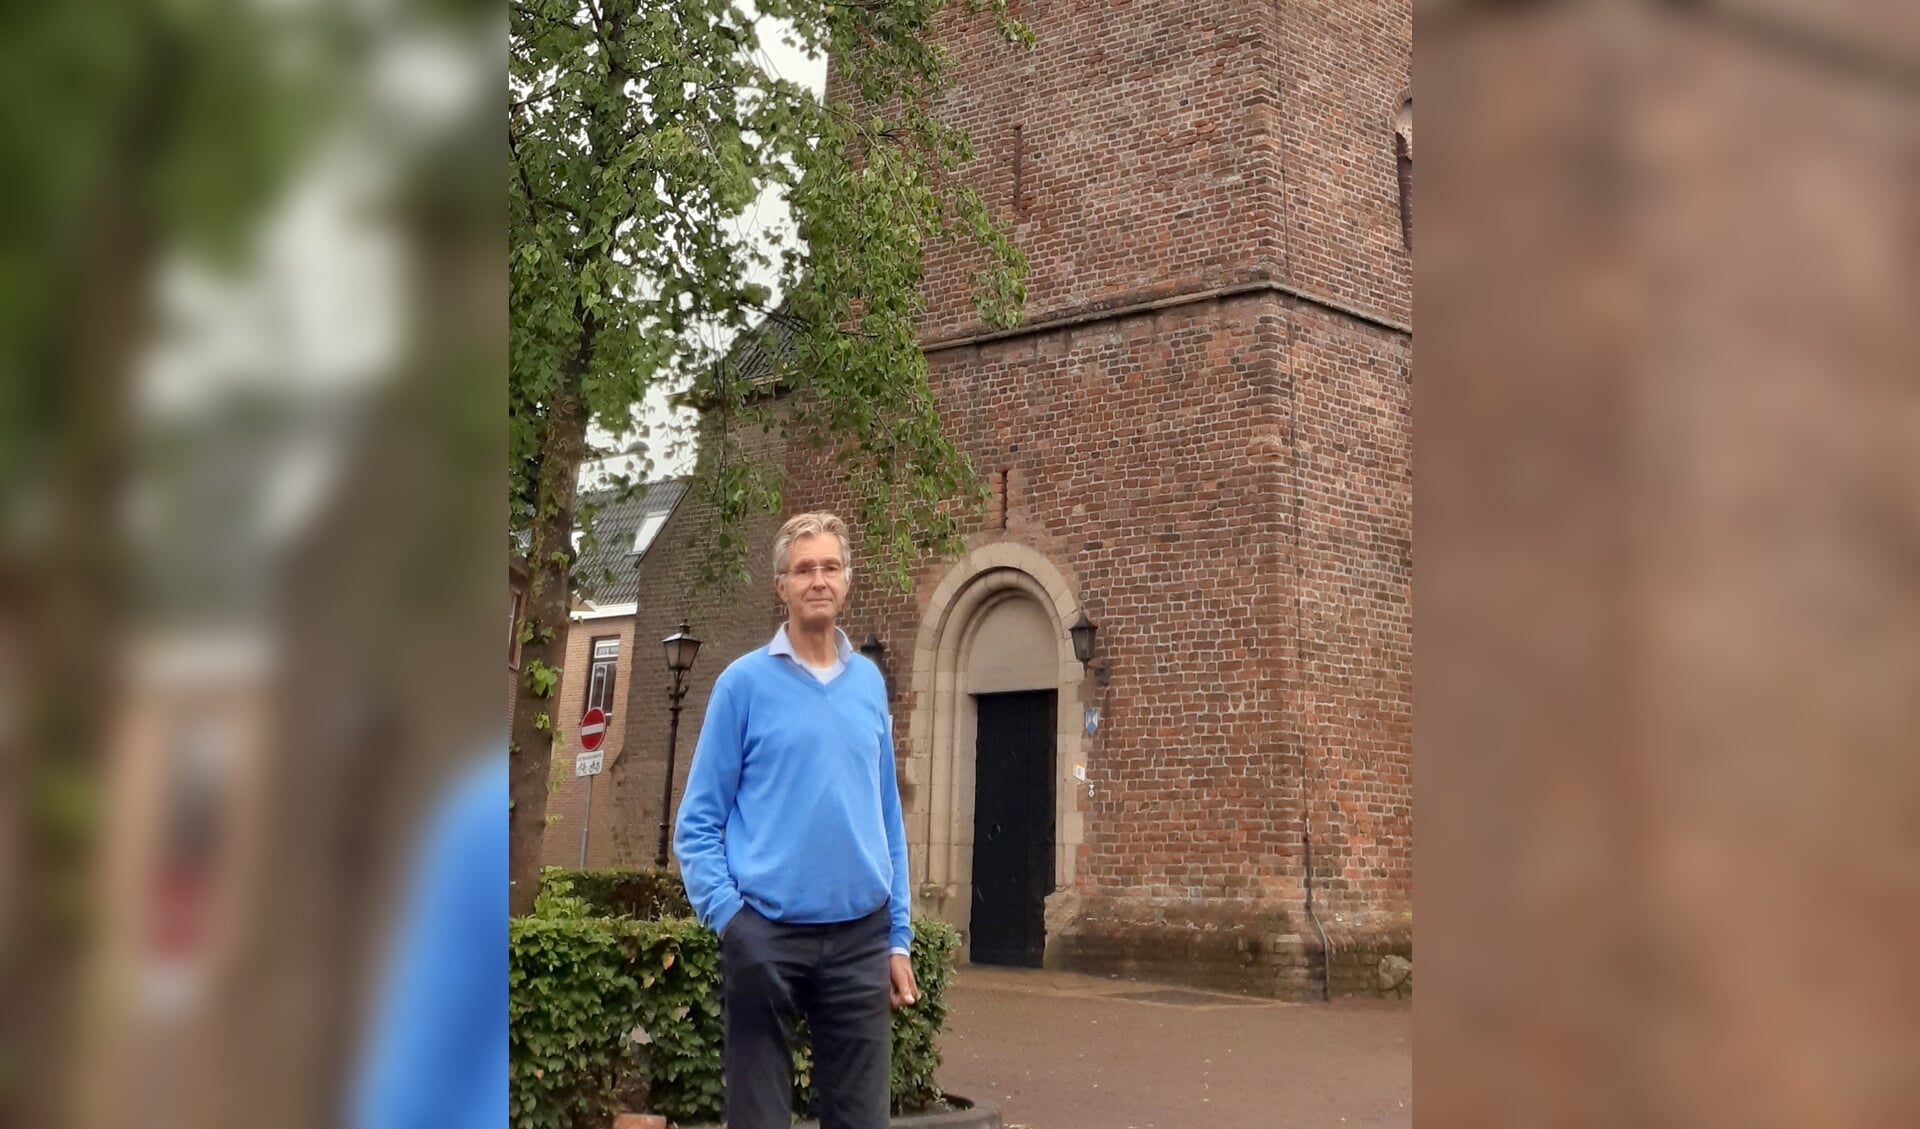 Ab Boers voor de Dorpskerk in Vorden: “Ik vind het bijzonder dat deze kerk door de eeuwen heen zoveel heeft betekend voor zoveel mensen.” Foto: Ceciel Bremer